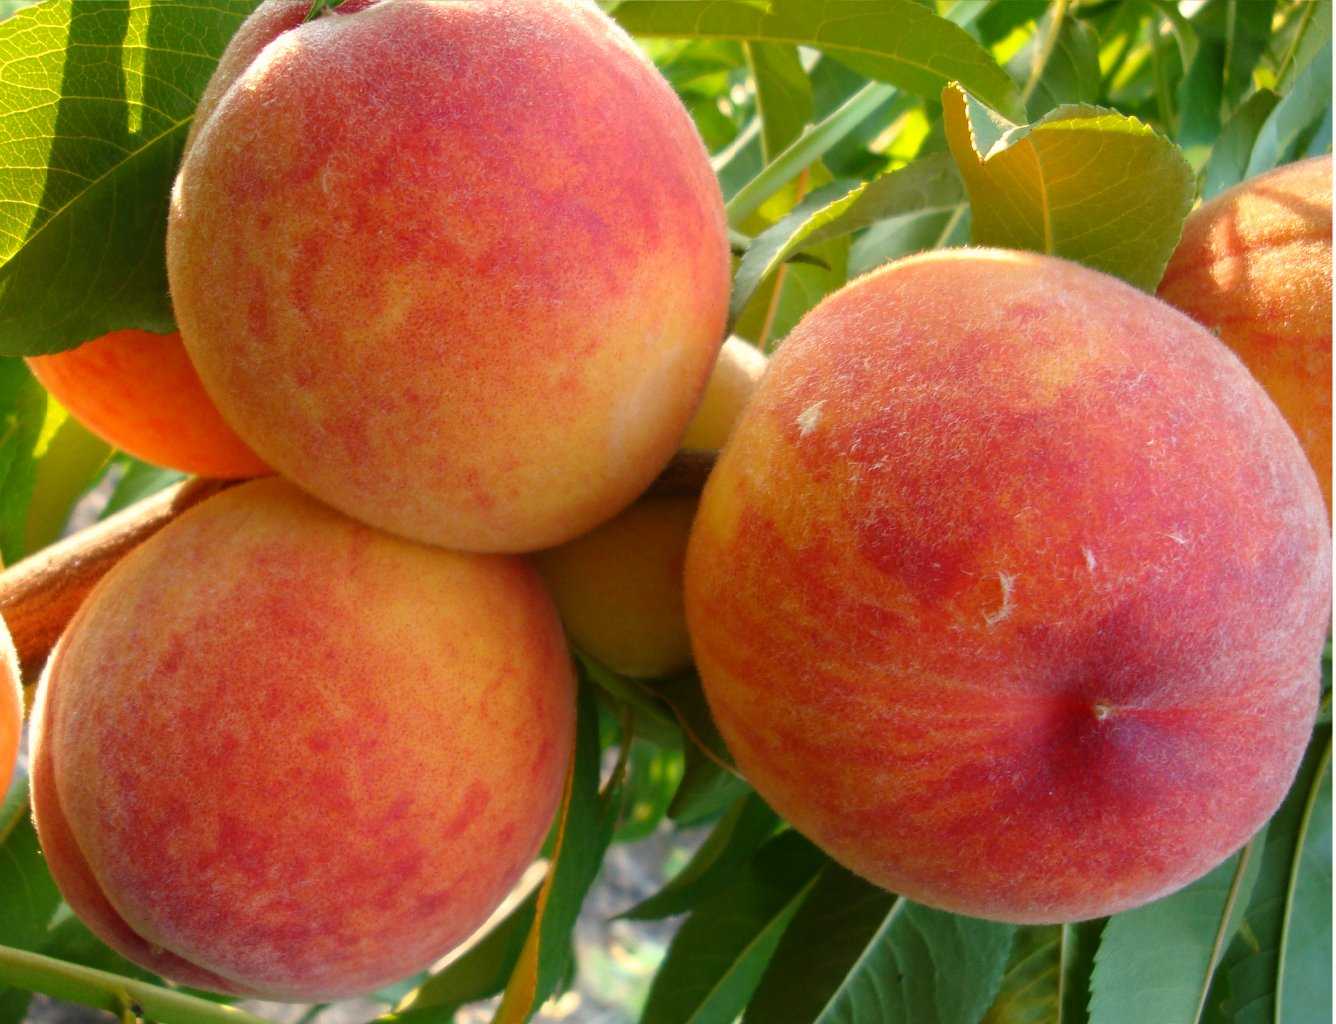 Краткая характеристика и описание разных сортов персиков, которые выращиваются на юге страны и в Подмосковье. Сроки созревания распространенных видов и сортов культуры.